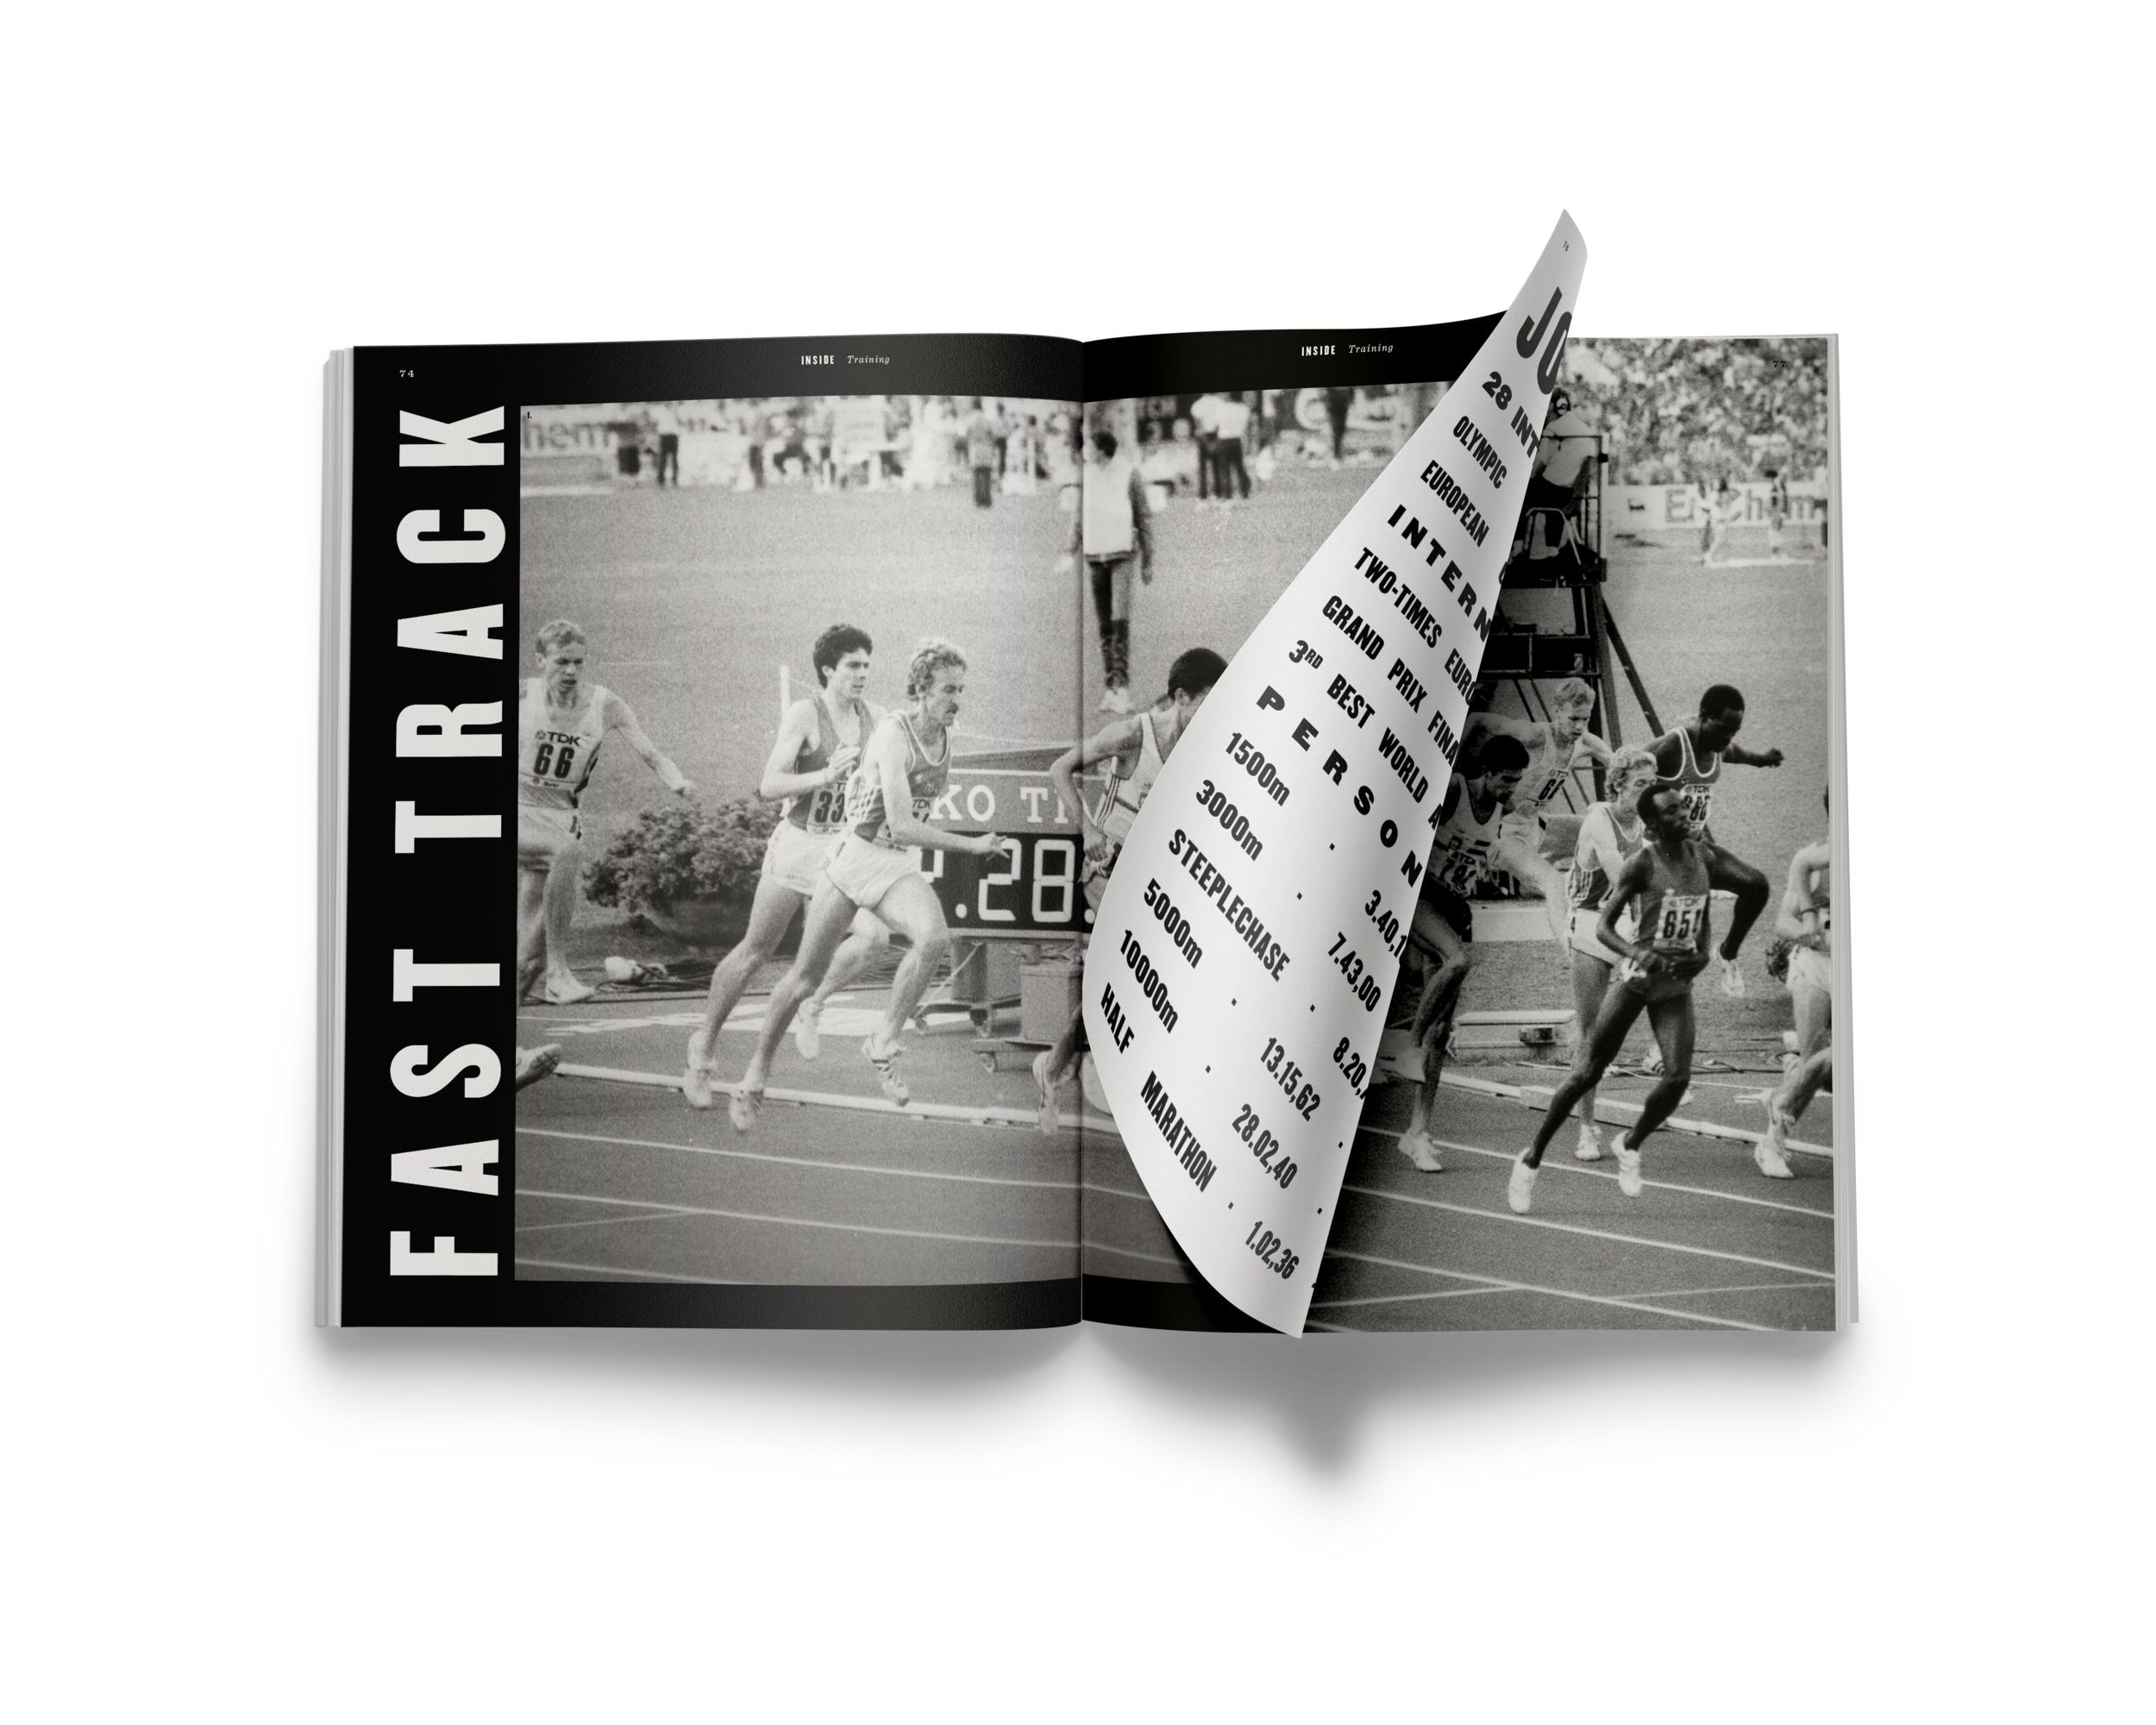  FAST TRACK TRAININGS é uma análise cuidadosa de 16 anos de treino, no que diz respeito aos treinos específicos de corrida do atleta José Regalo. Está publicada na edição nº 1. Todas as edições abordam aspetos práticos do treino. 